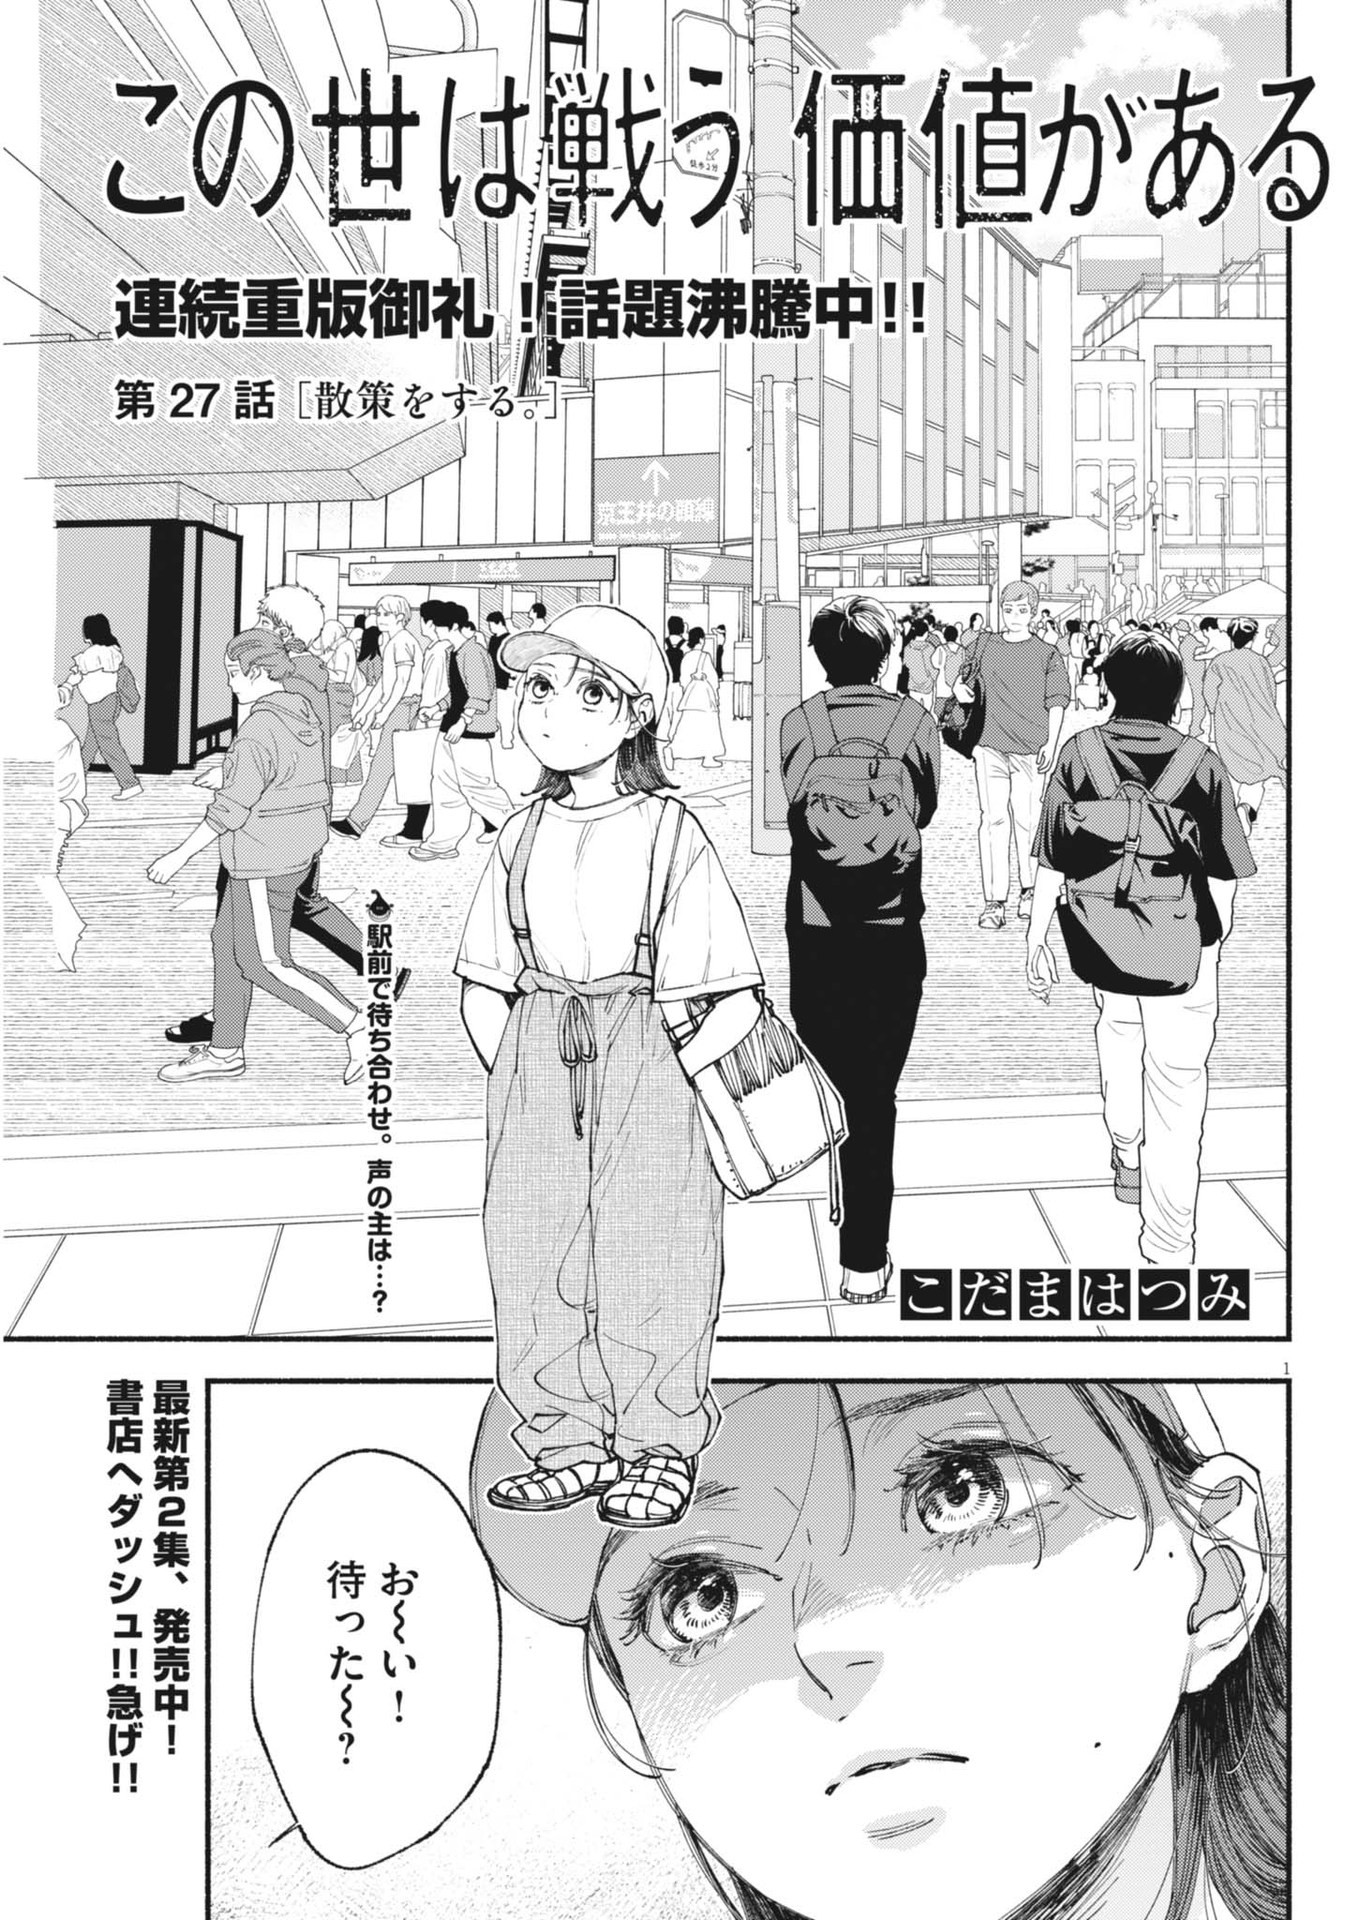 Konoyo wa Tatakau Kachi ga Aru  - Chapter 27 - Page 1